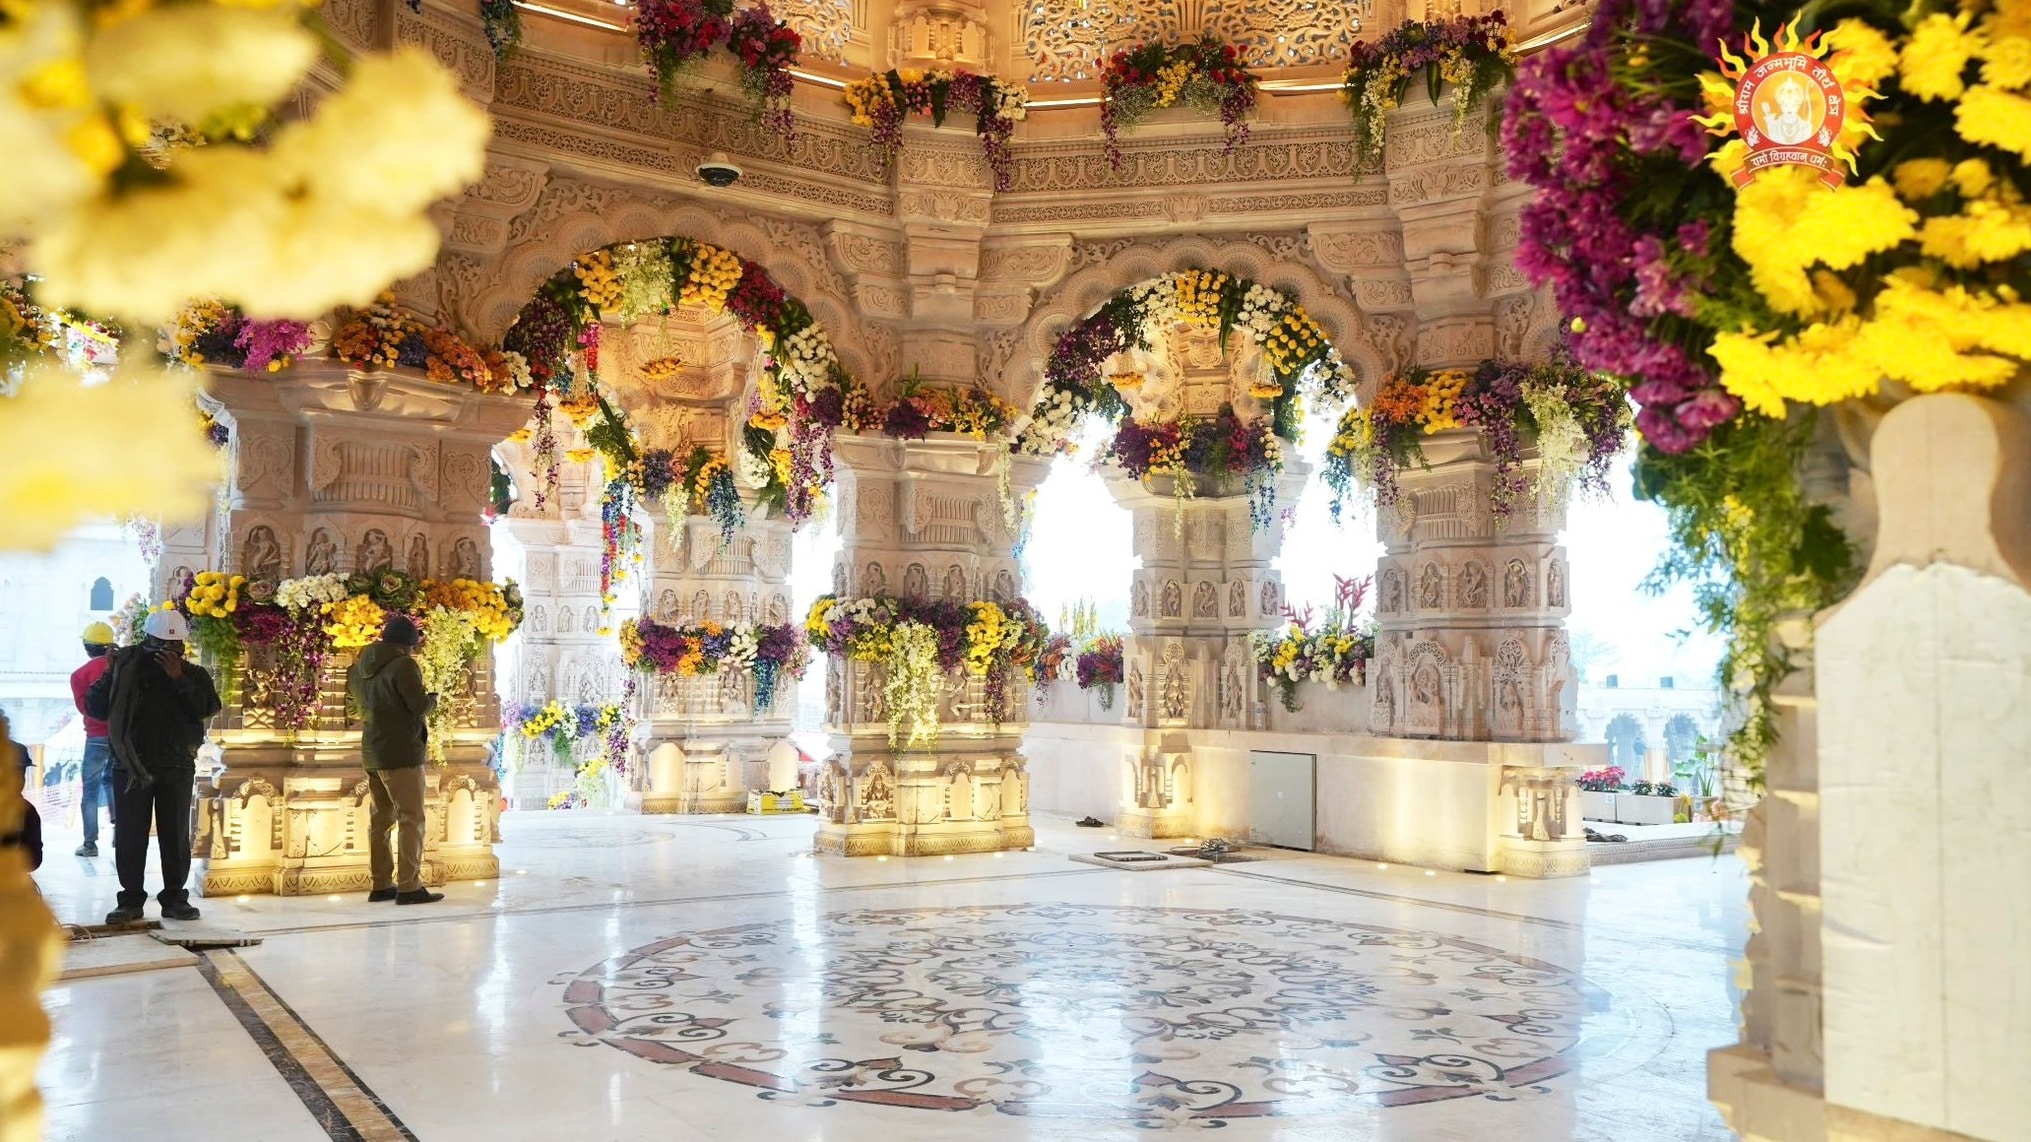 राम मंदिर के लोकार्पण और रामलला के नवीन विग्रह की प्राण प्रतिष्ठा के लिए अयोध्या को 2500 क्विंटल फूलों से संवारा जा रहा है.